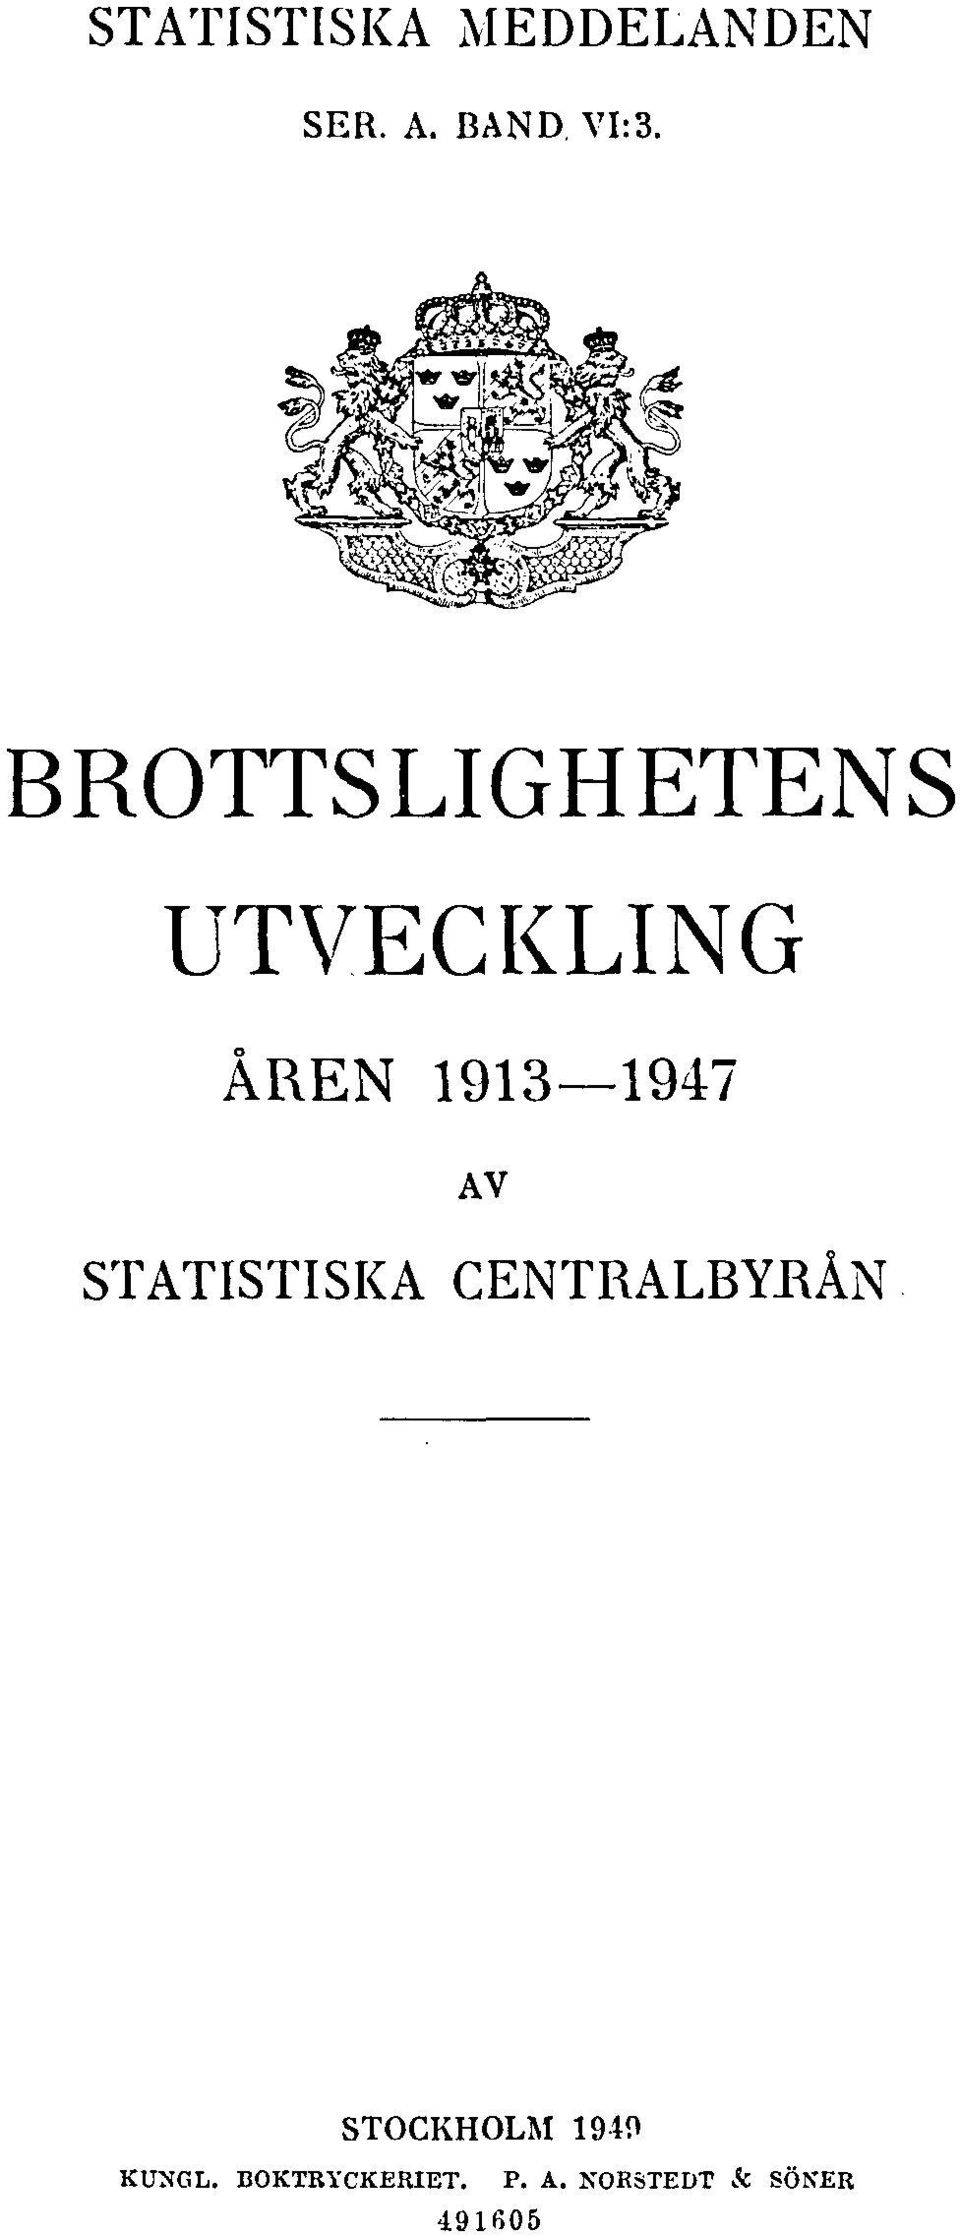 STATISTISKA CENTRALBYRÅN STOCKHOLM 1949